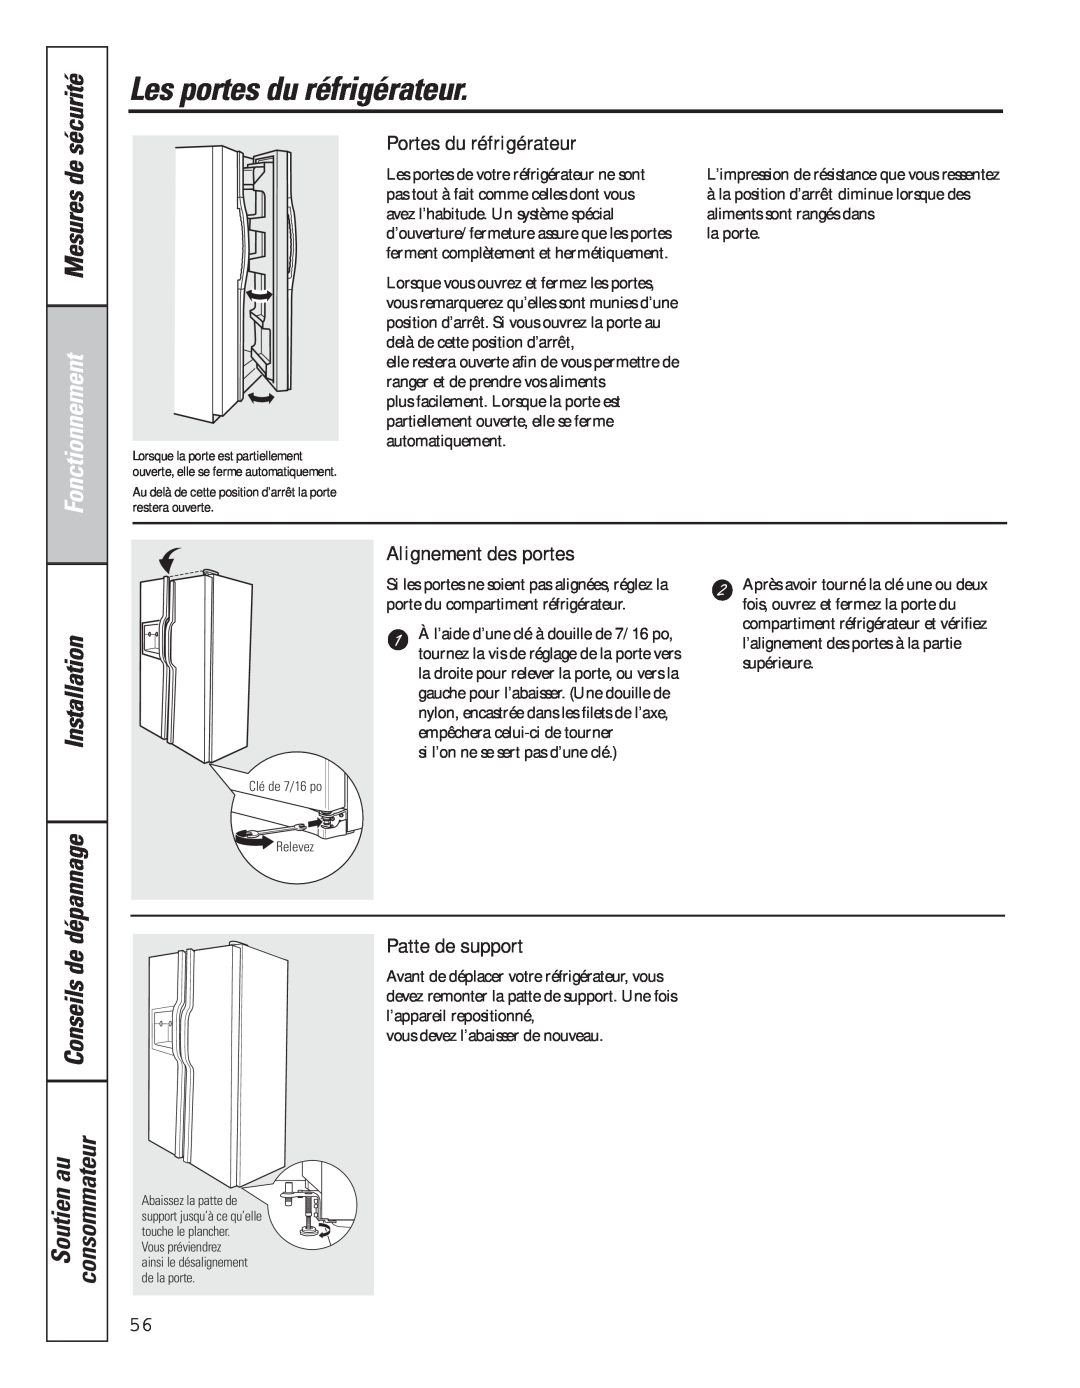 GE 49-60637 manual Les portes du réfrigérateur, Mesures de, Fonctionnement, Portes du réfrigérateur, Alignement des portes 